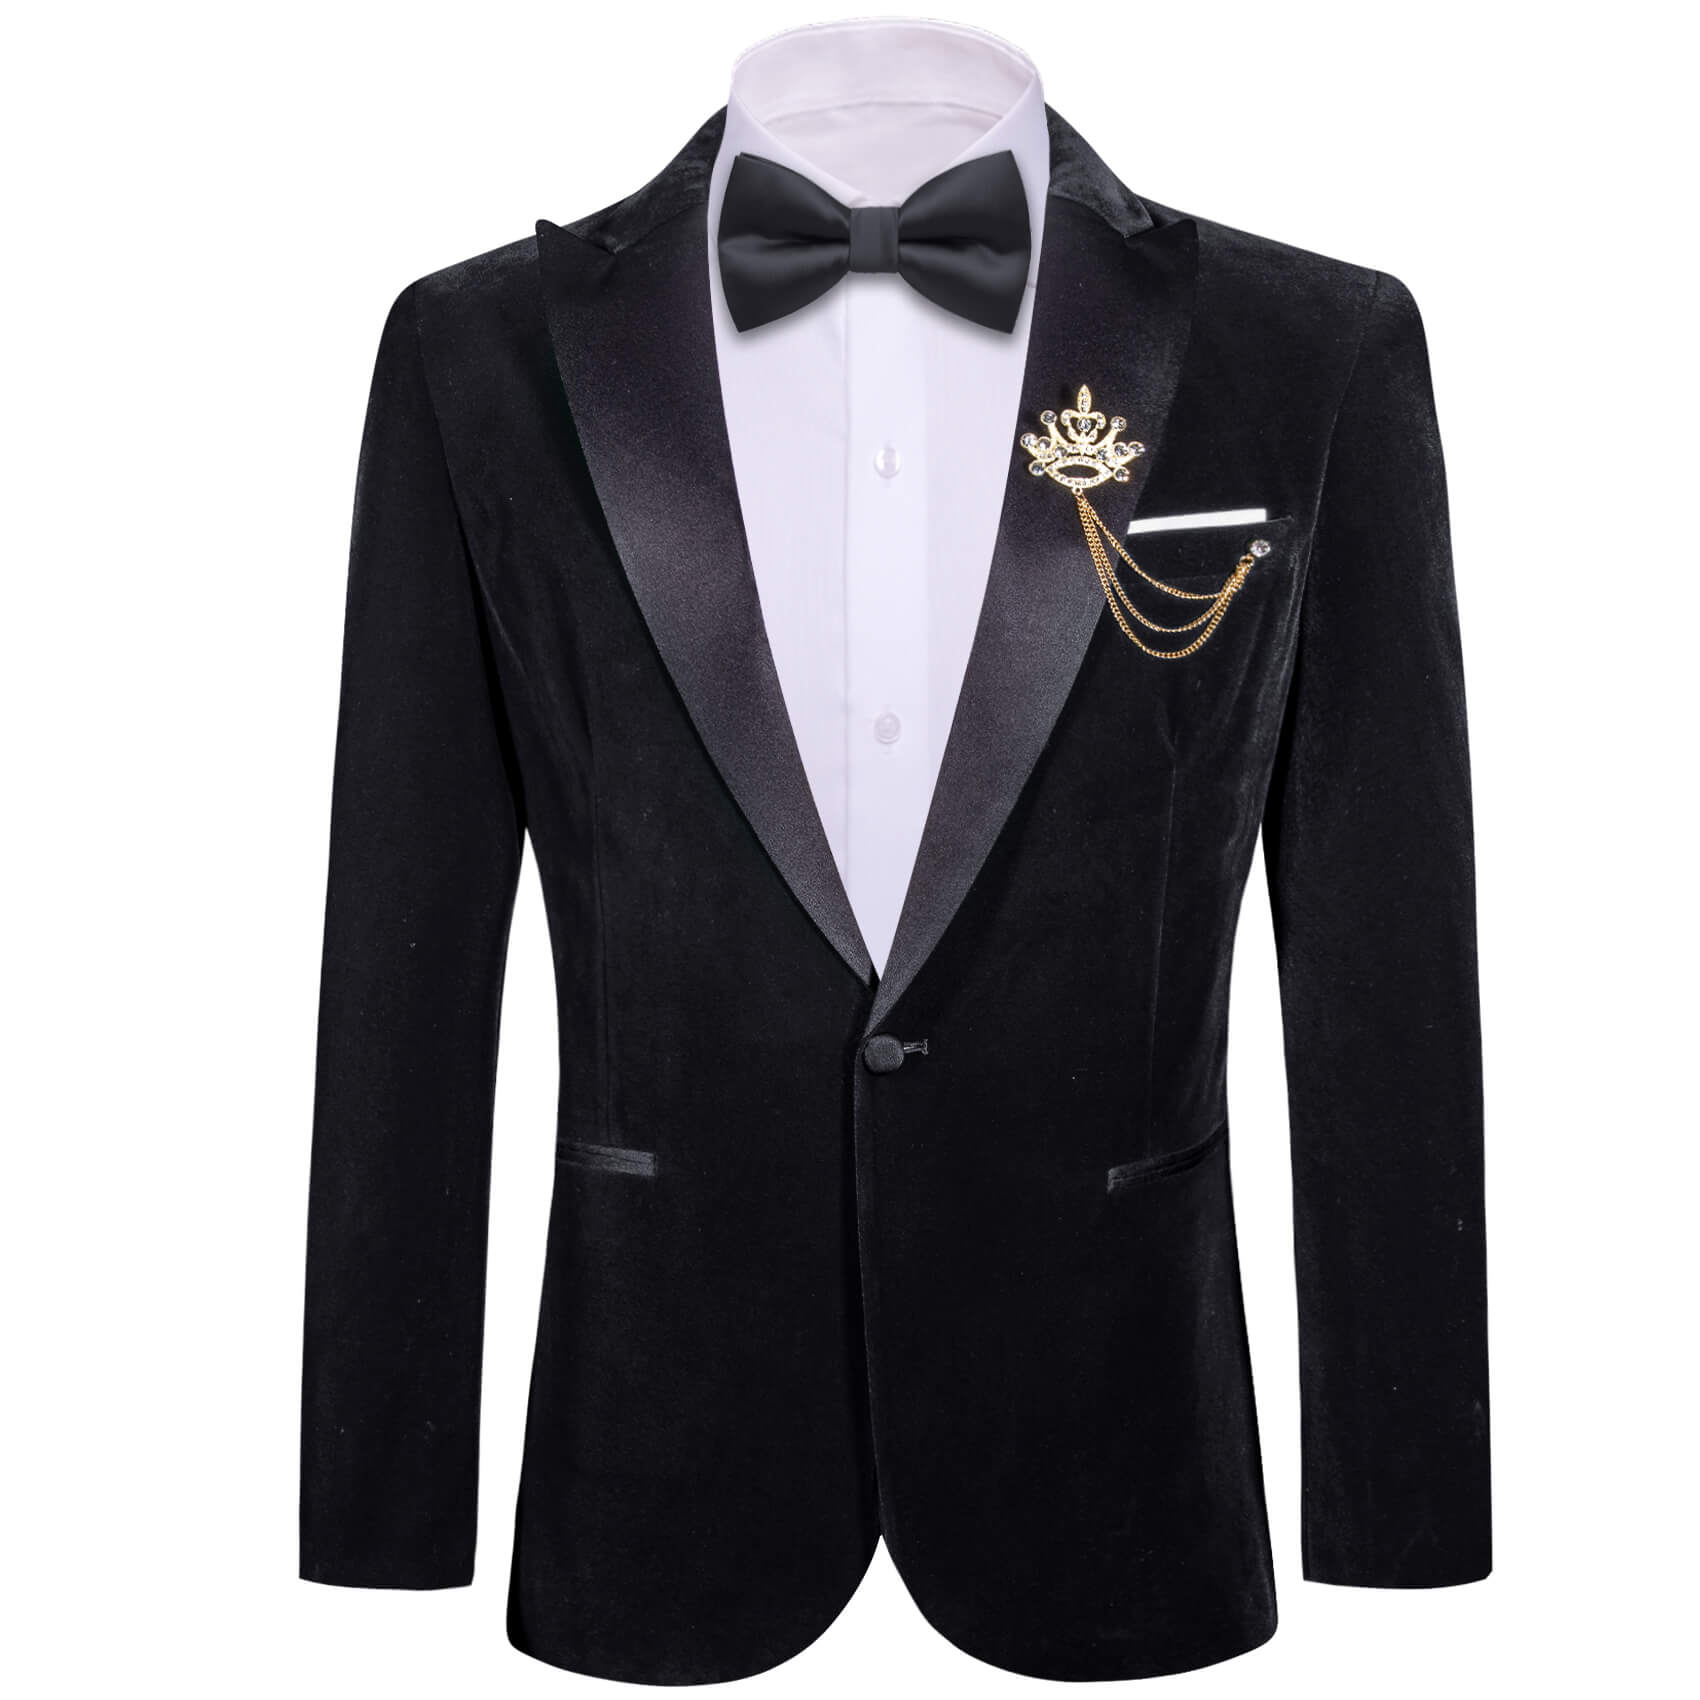  Classic Black Solid Silk Peak Collar Blazer Suit